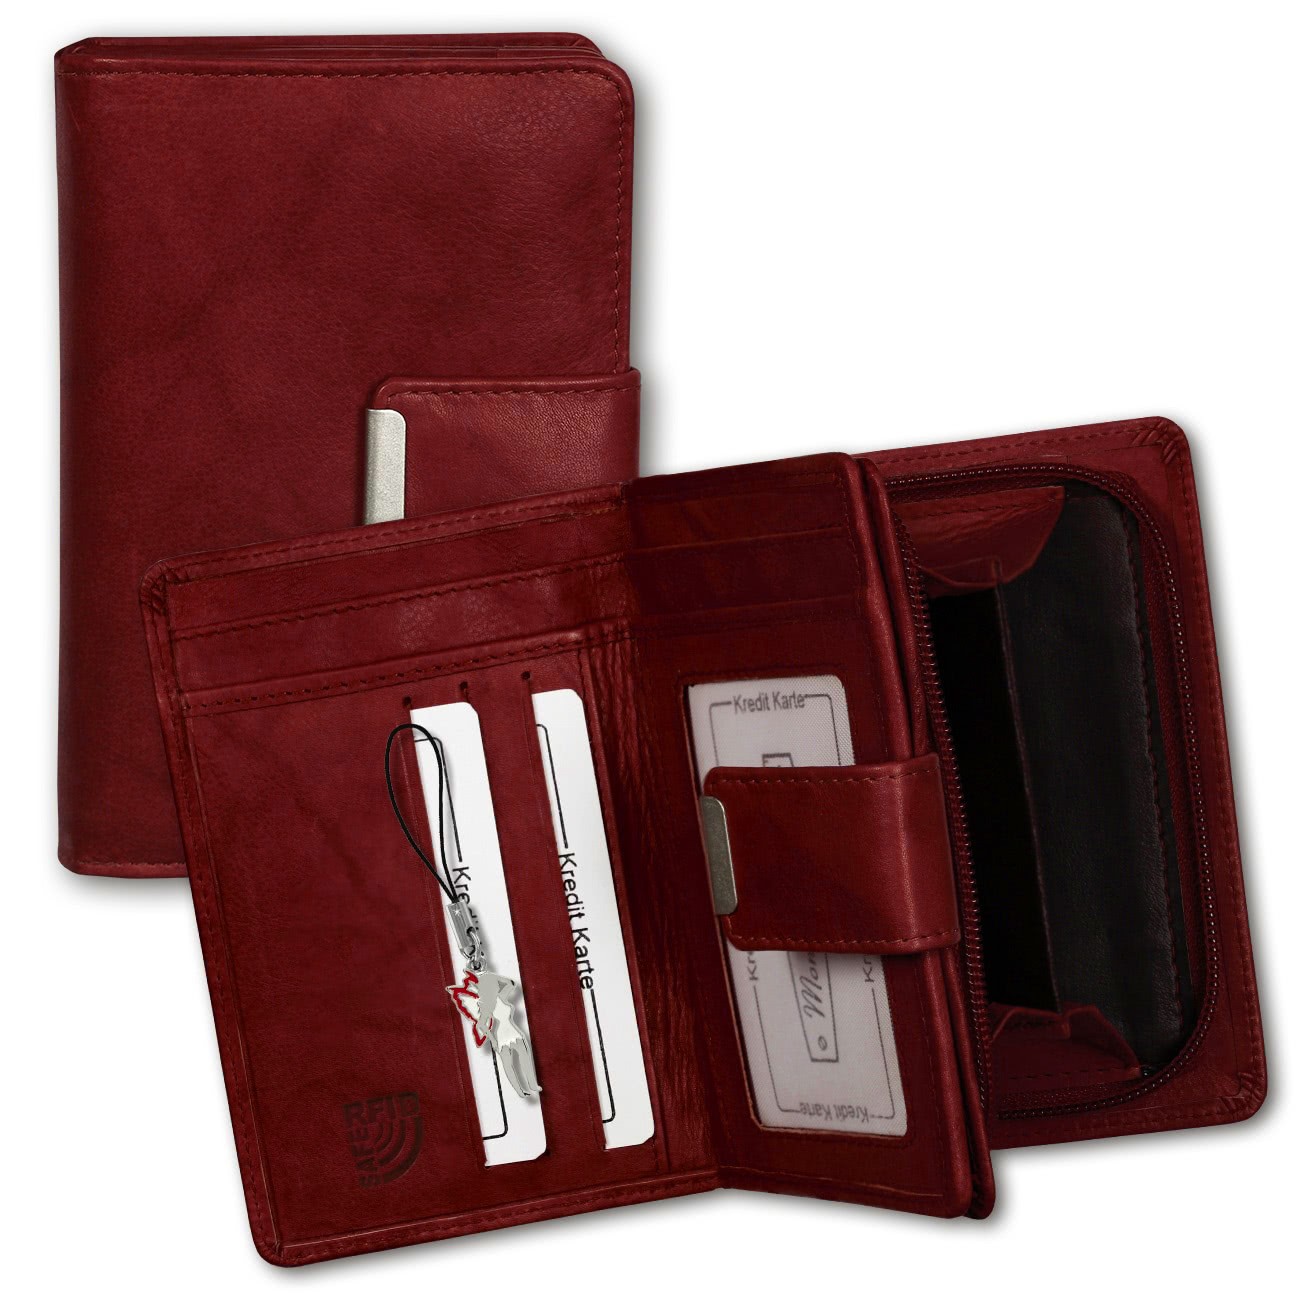 Money Maker Geldbörse Leder rot Brieftasche Portemonnaie RFID Schutz OPJ701R